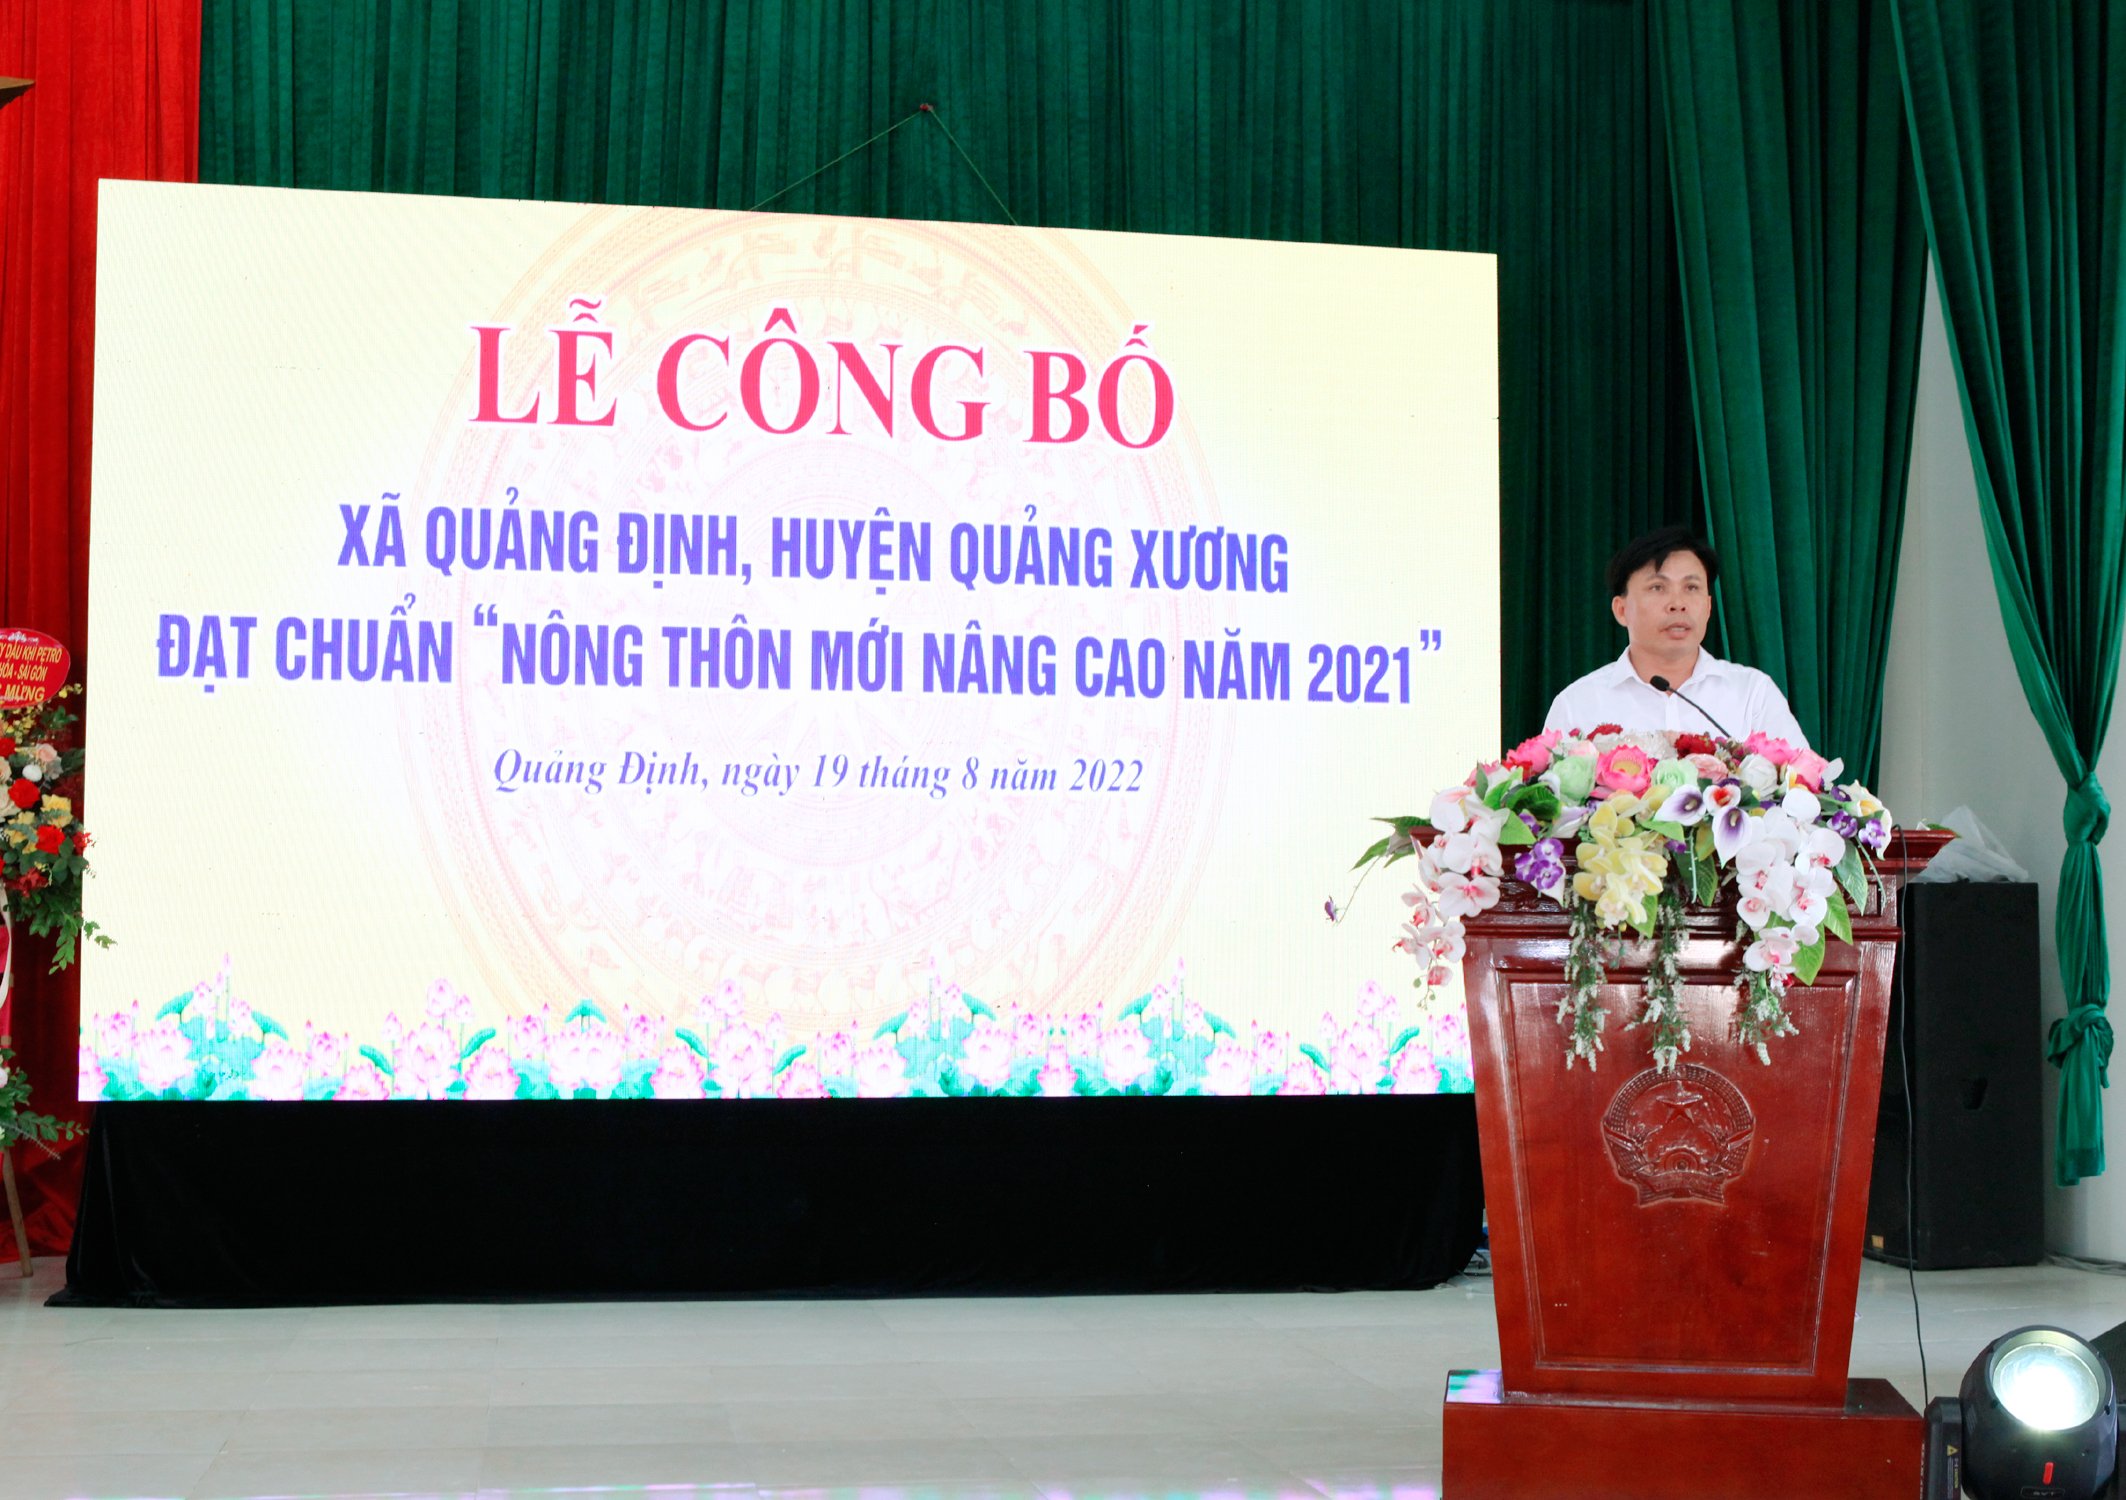 Lễ công bố quyết định công nhận xã Quảng Định đạt chuẩn nông thôn mới nâng cao năm 2021.